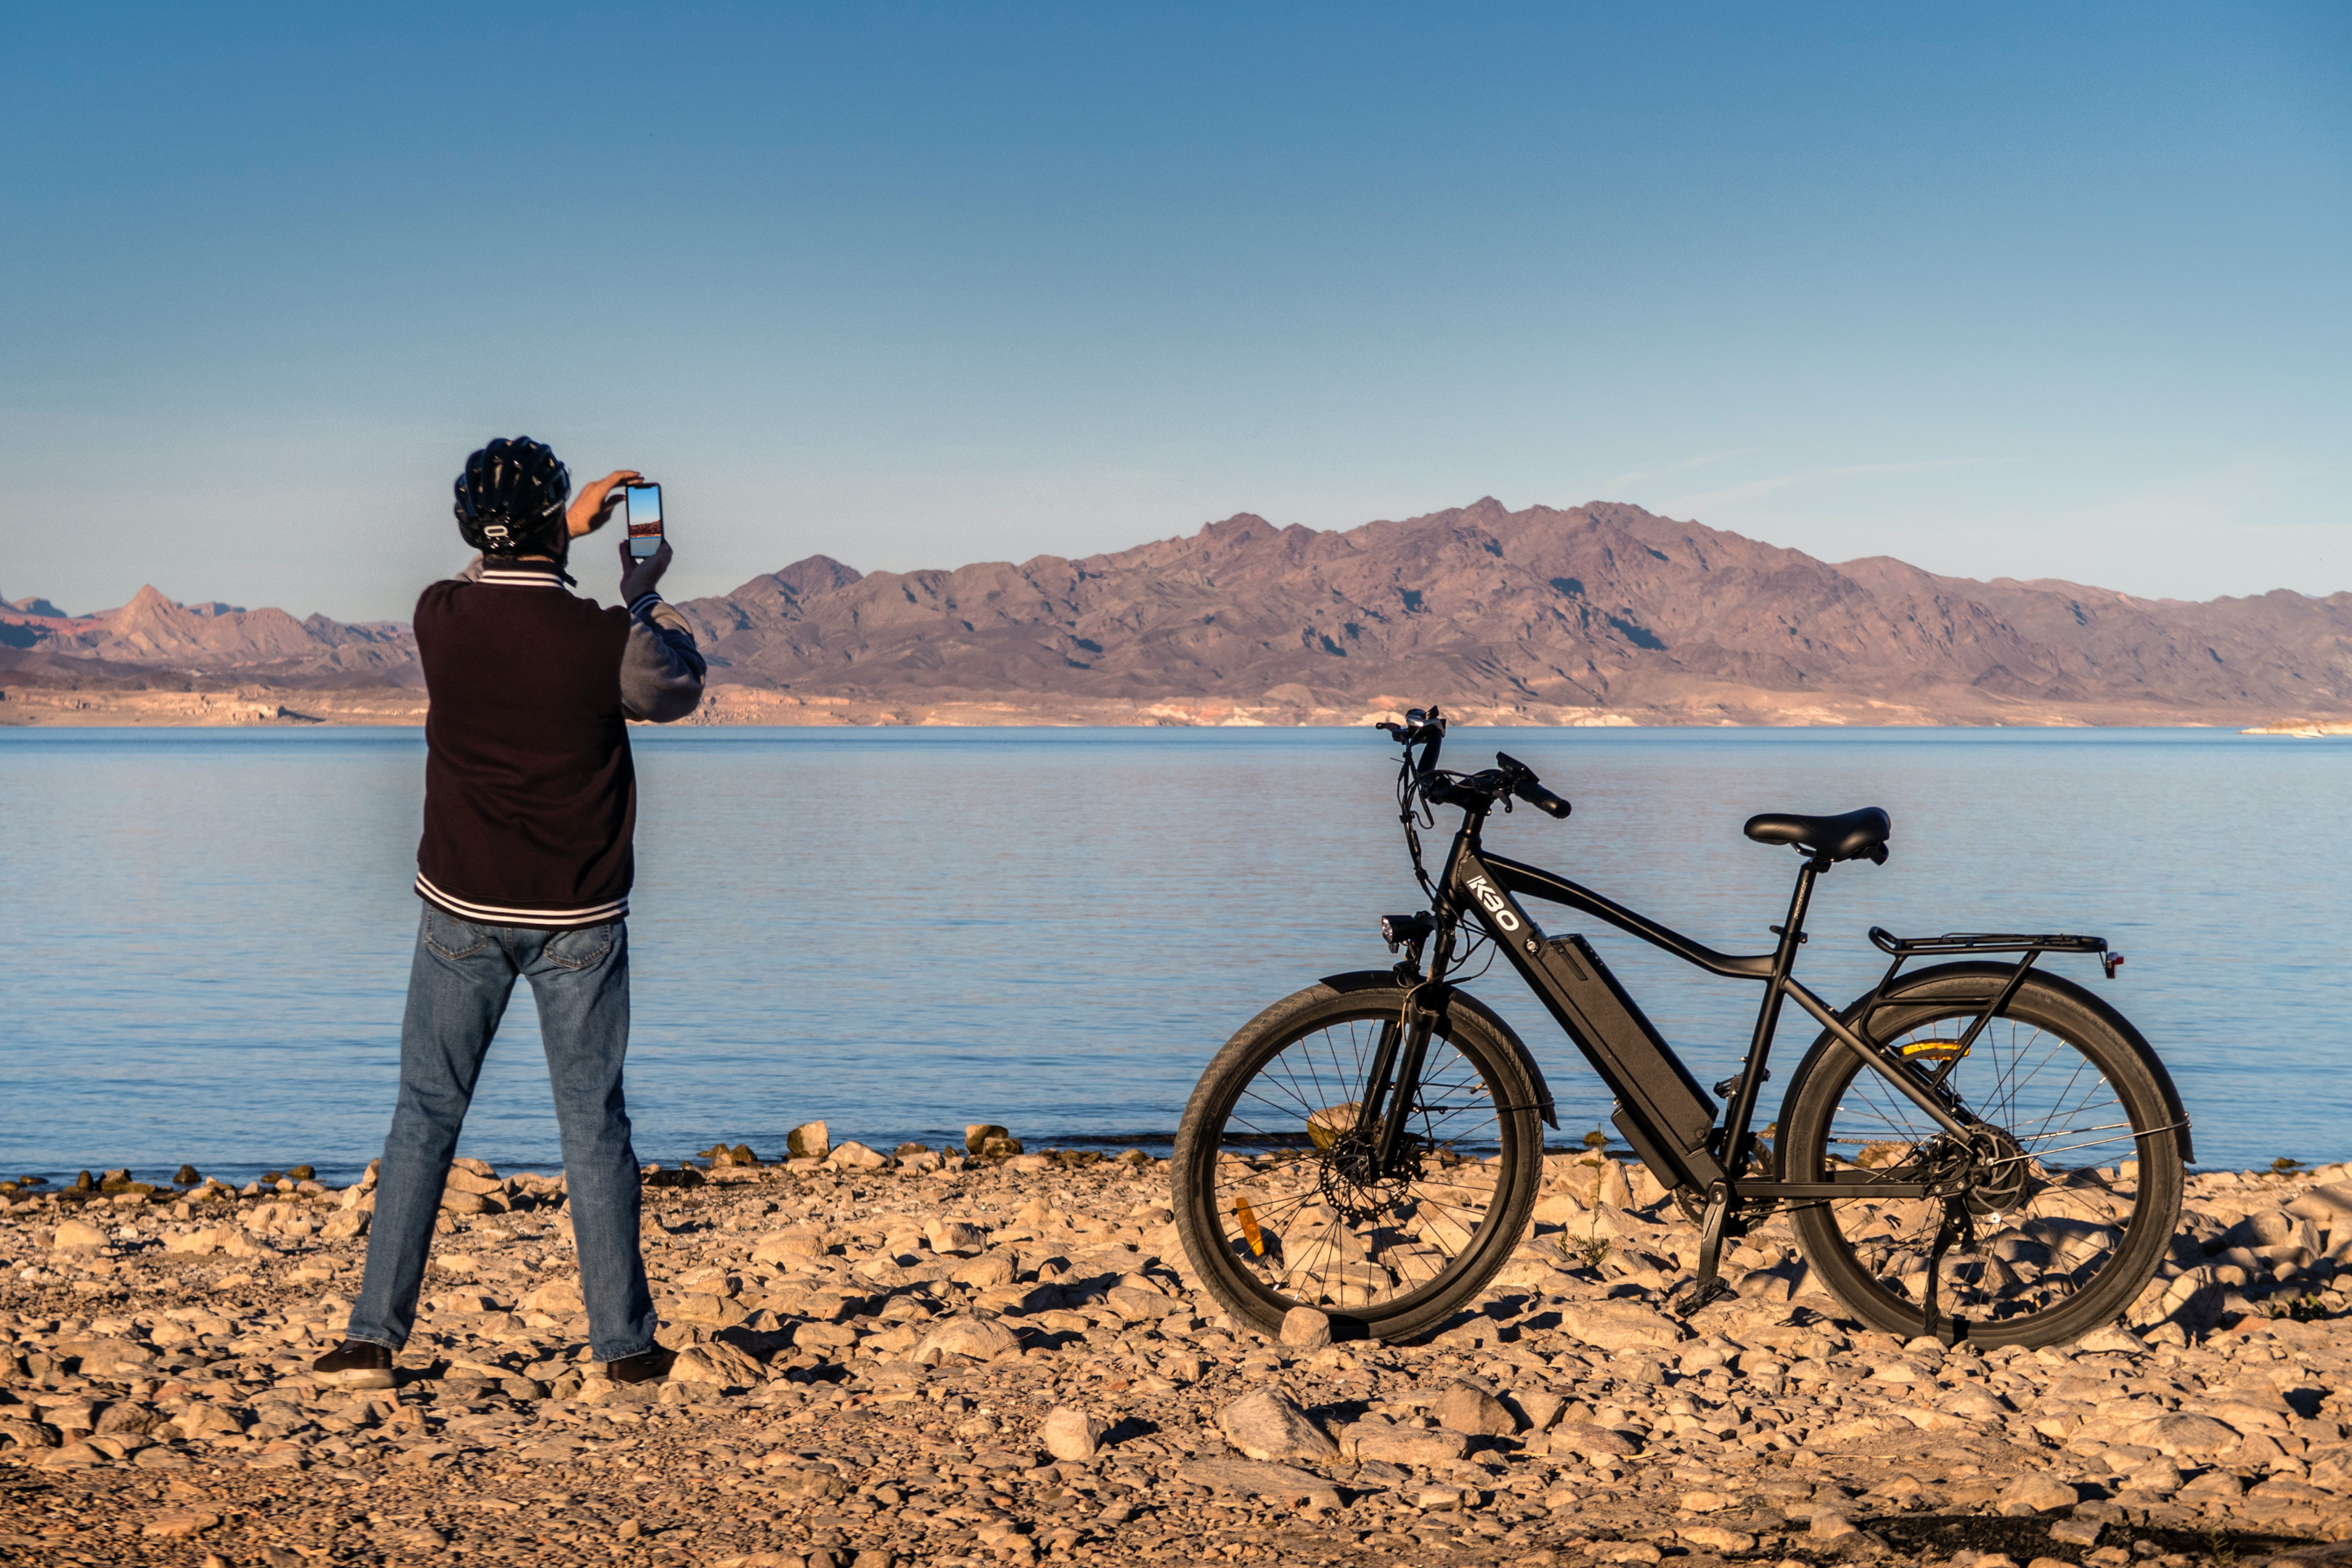 Homem tirando foto de sua ebike, com um lago e montanha ao fundo